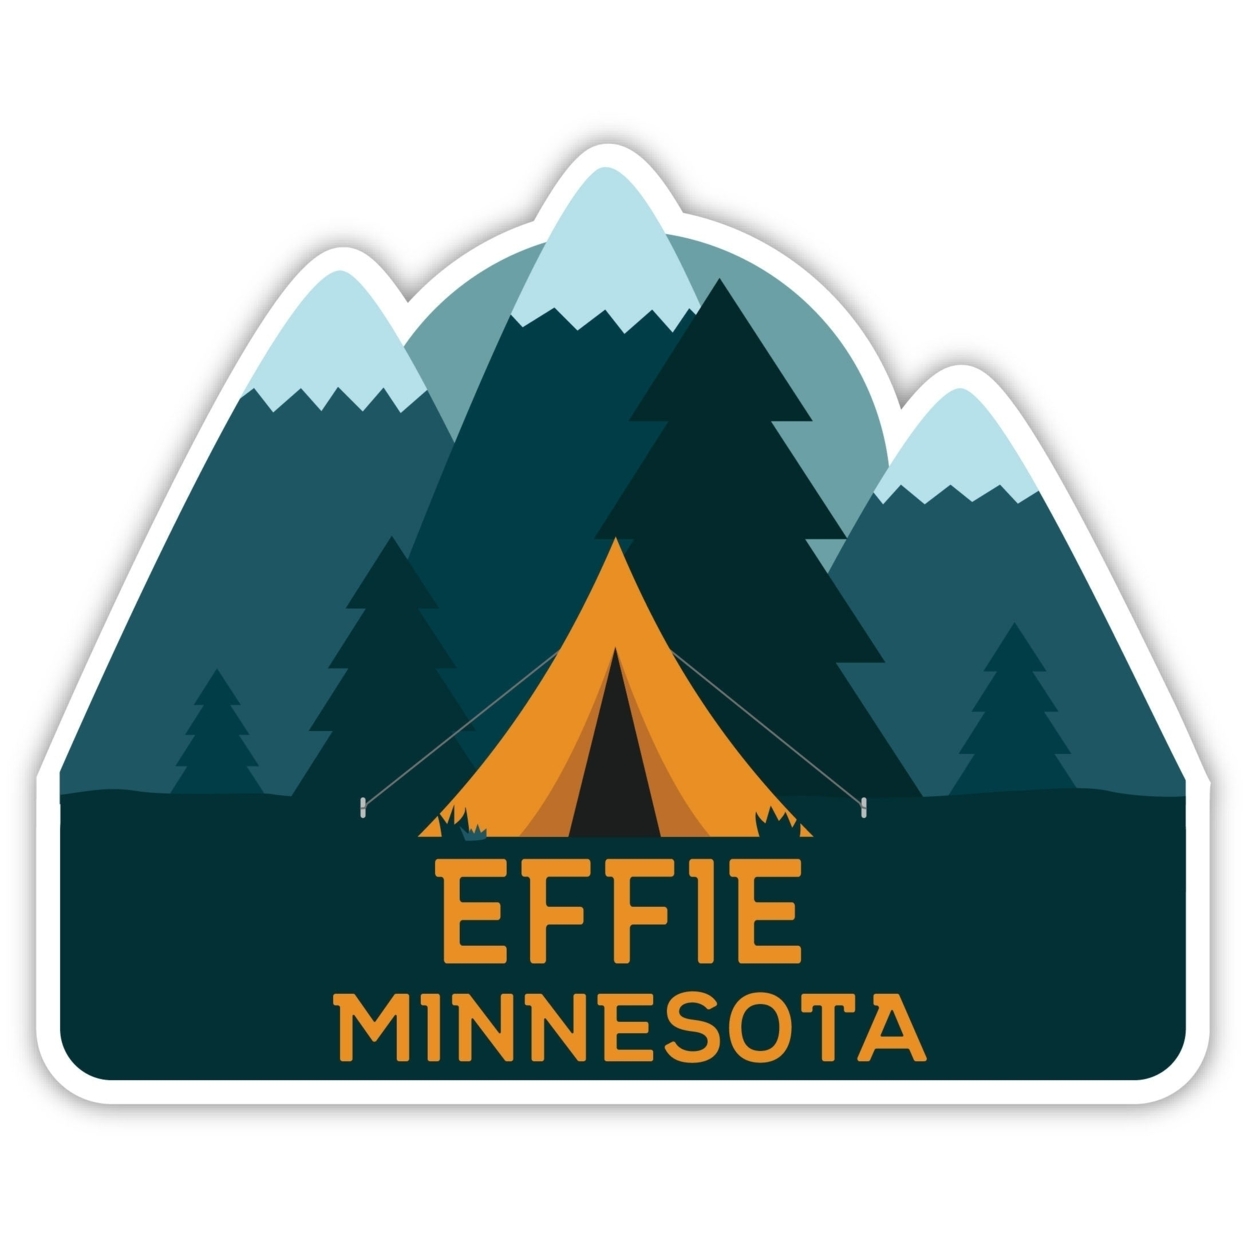 Effie Minnesota Souvenir Decorative Stickers (Choose Theme And Size) - Single Unit, 6-Inch, Tent